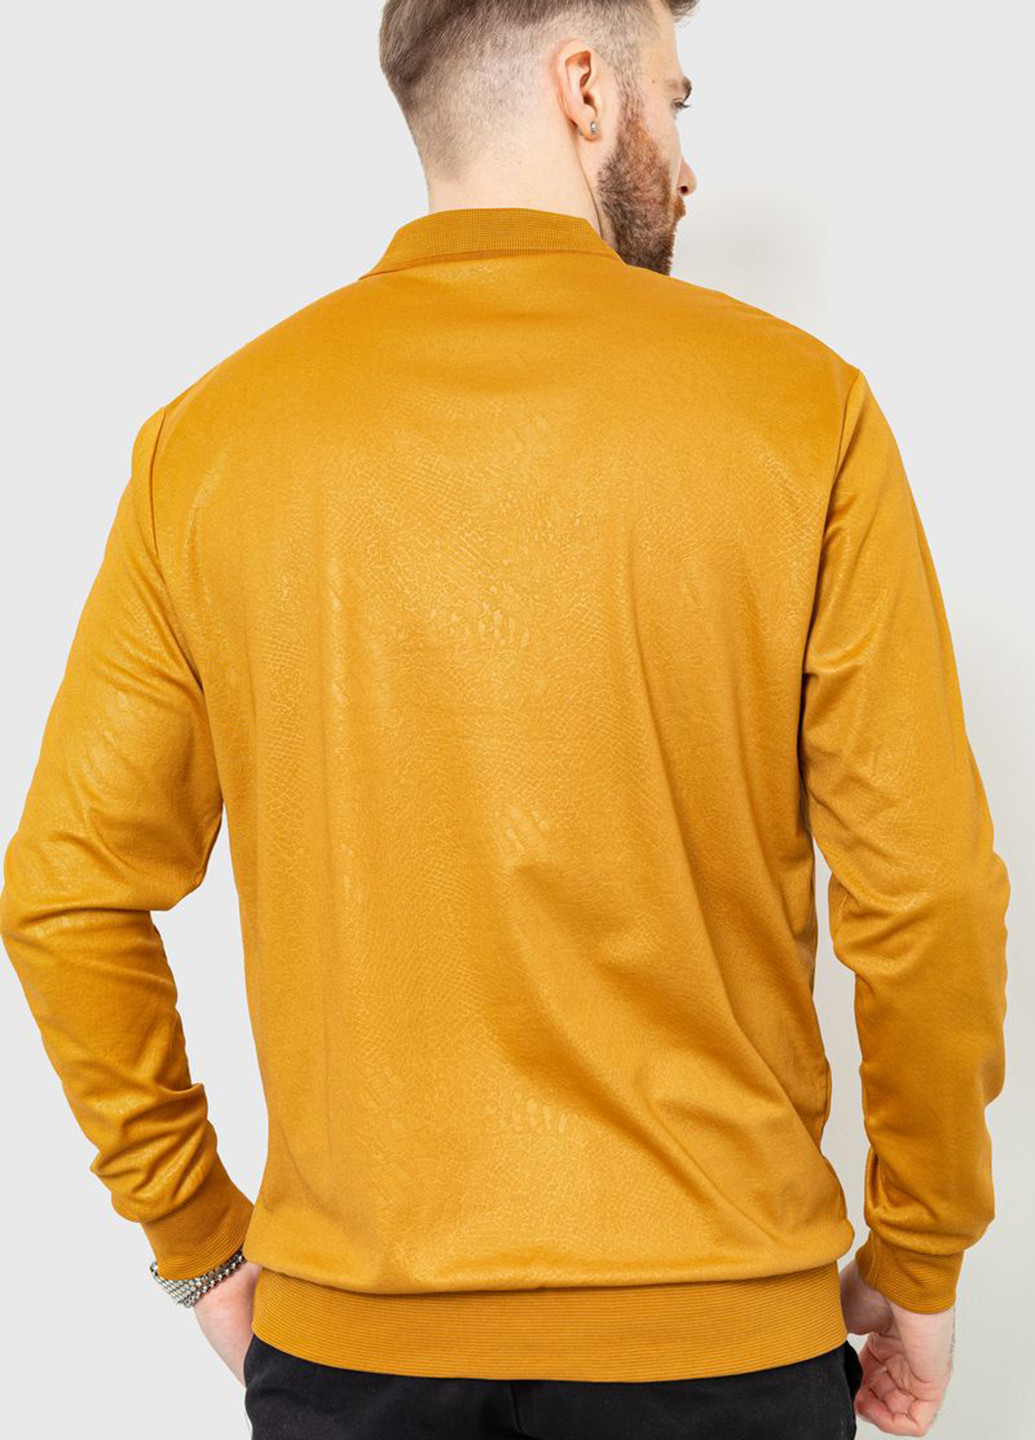 Светло-коричневая футболка-поло для мужчин Ager змеиный